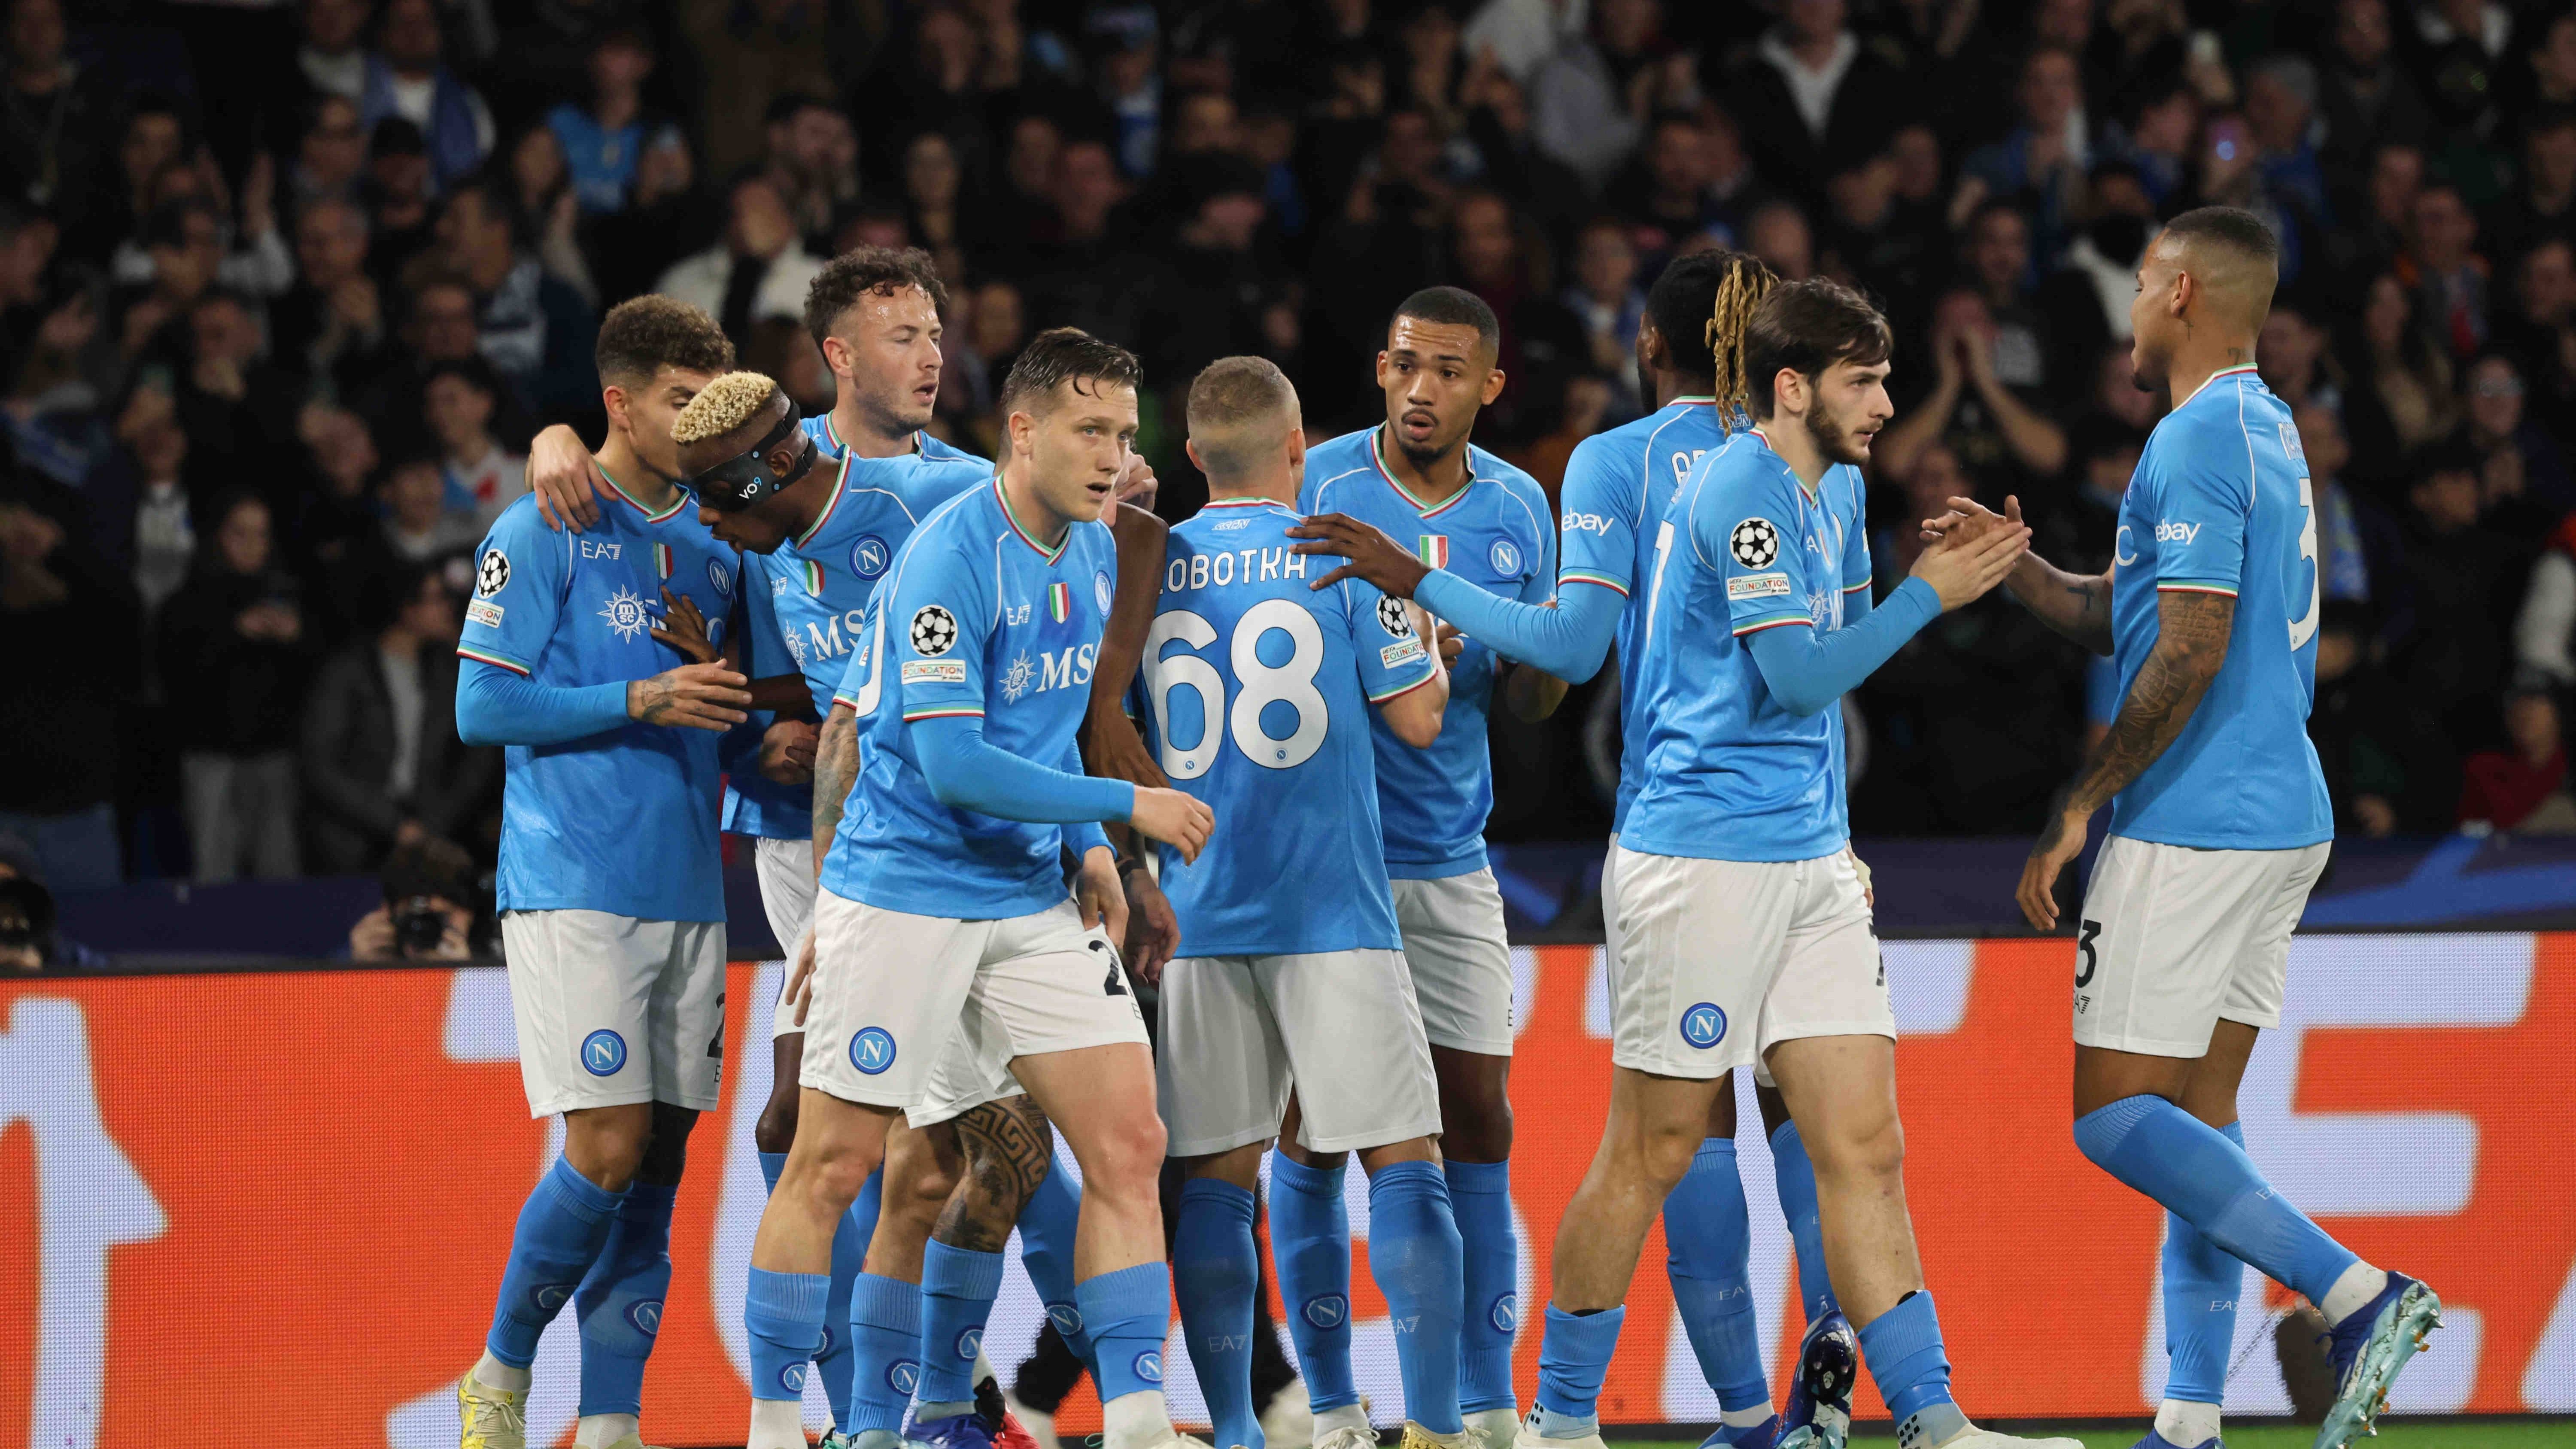 <strong>Gruppe C: SSC Neapel</strong><br>Napoli folgt auf Real Madrid. Mit einem 2:0-Heimsieg gegen Sporting Braga erhöhen die Italiener ihr Konto auf zehn Punkte und ziehen somit ins Achtelfinale ein.